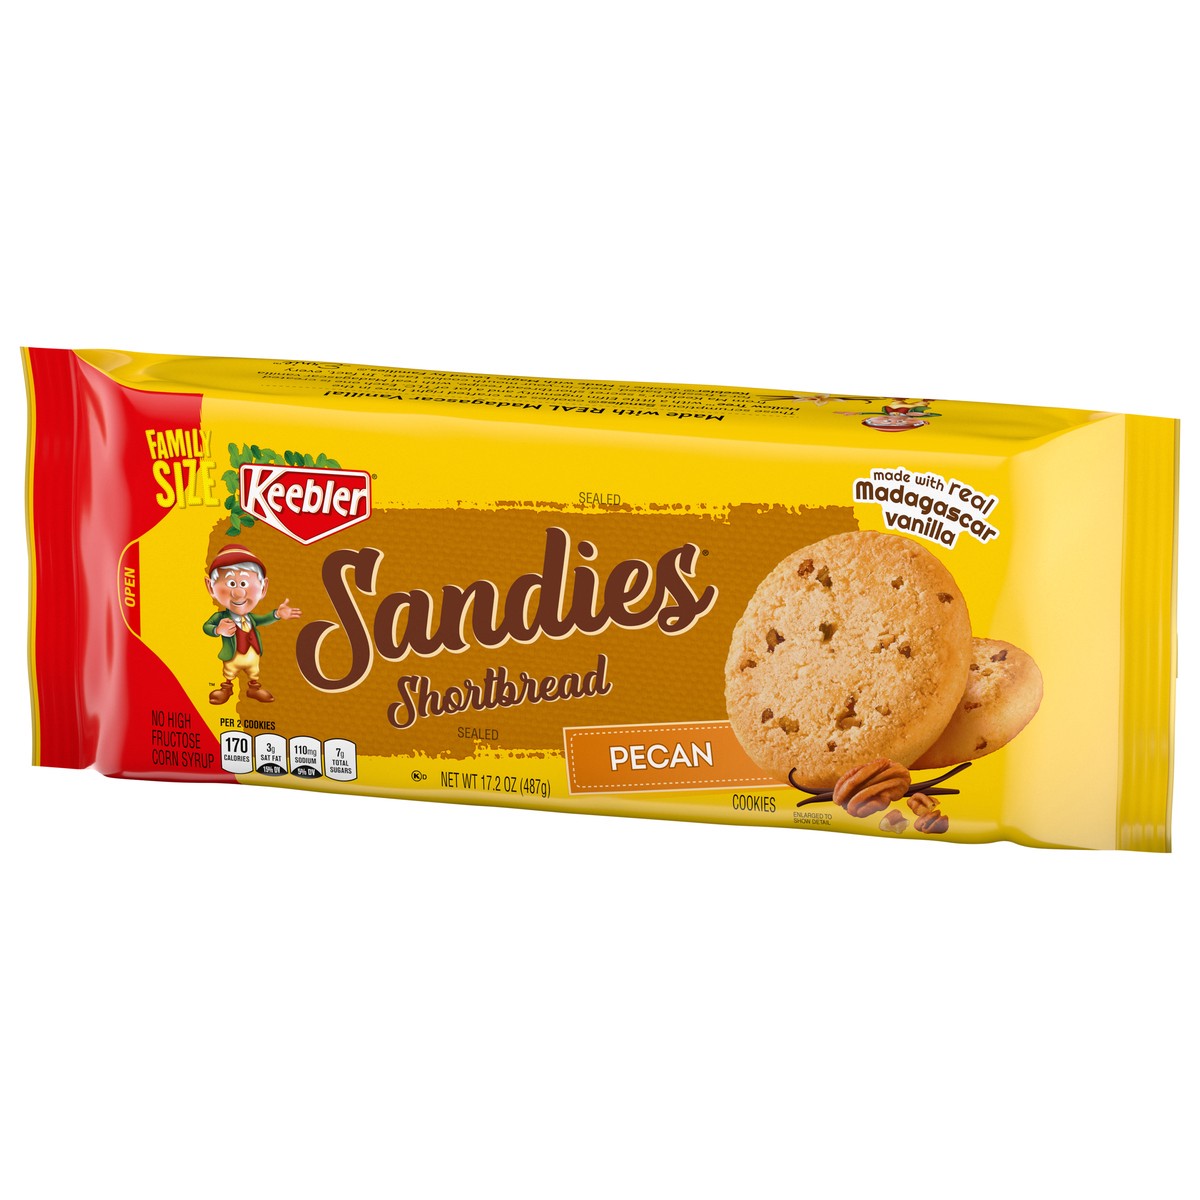 slide 5 of 9, Keebler Brands 06582 153198 Sandies Pecan Cookies 17.2oz Overwrap Everyday 17.2oz No PMT, 17.2 oz